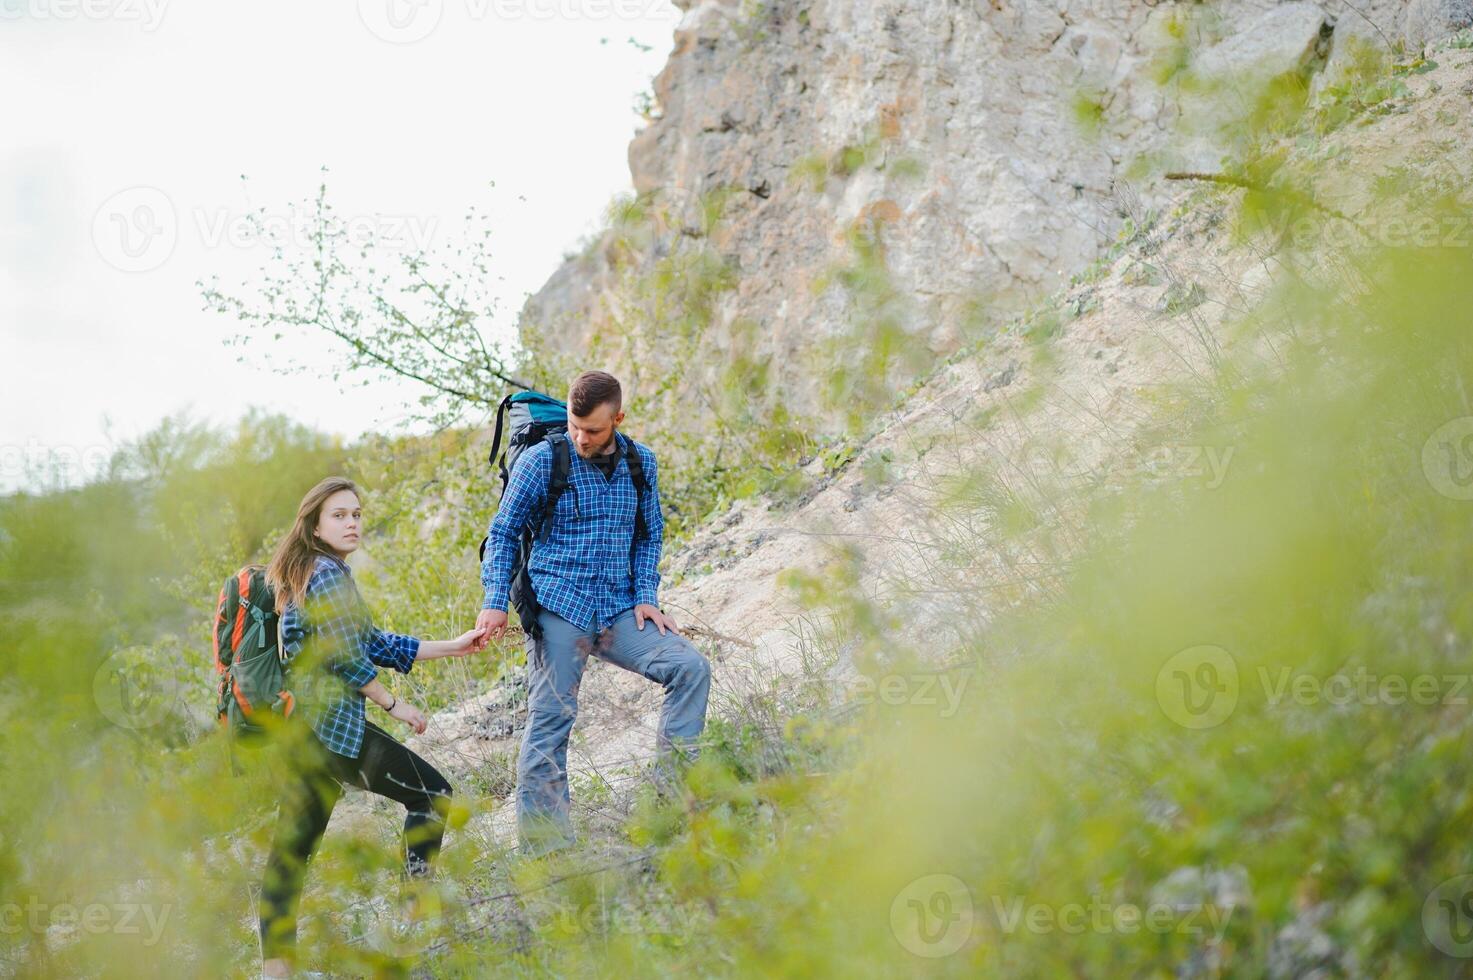 wandelaar vent geeft een hand- naar de meisje terwijl wandelen in de bergen, helpen en vriendschap concept foto